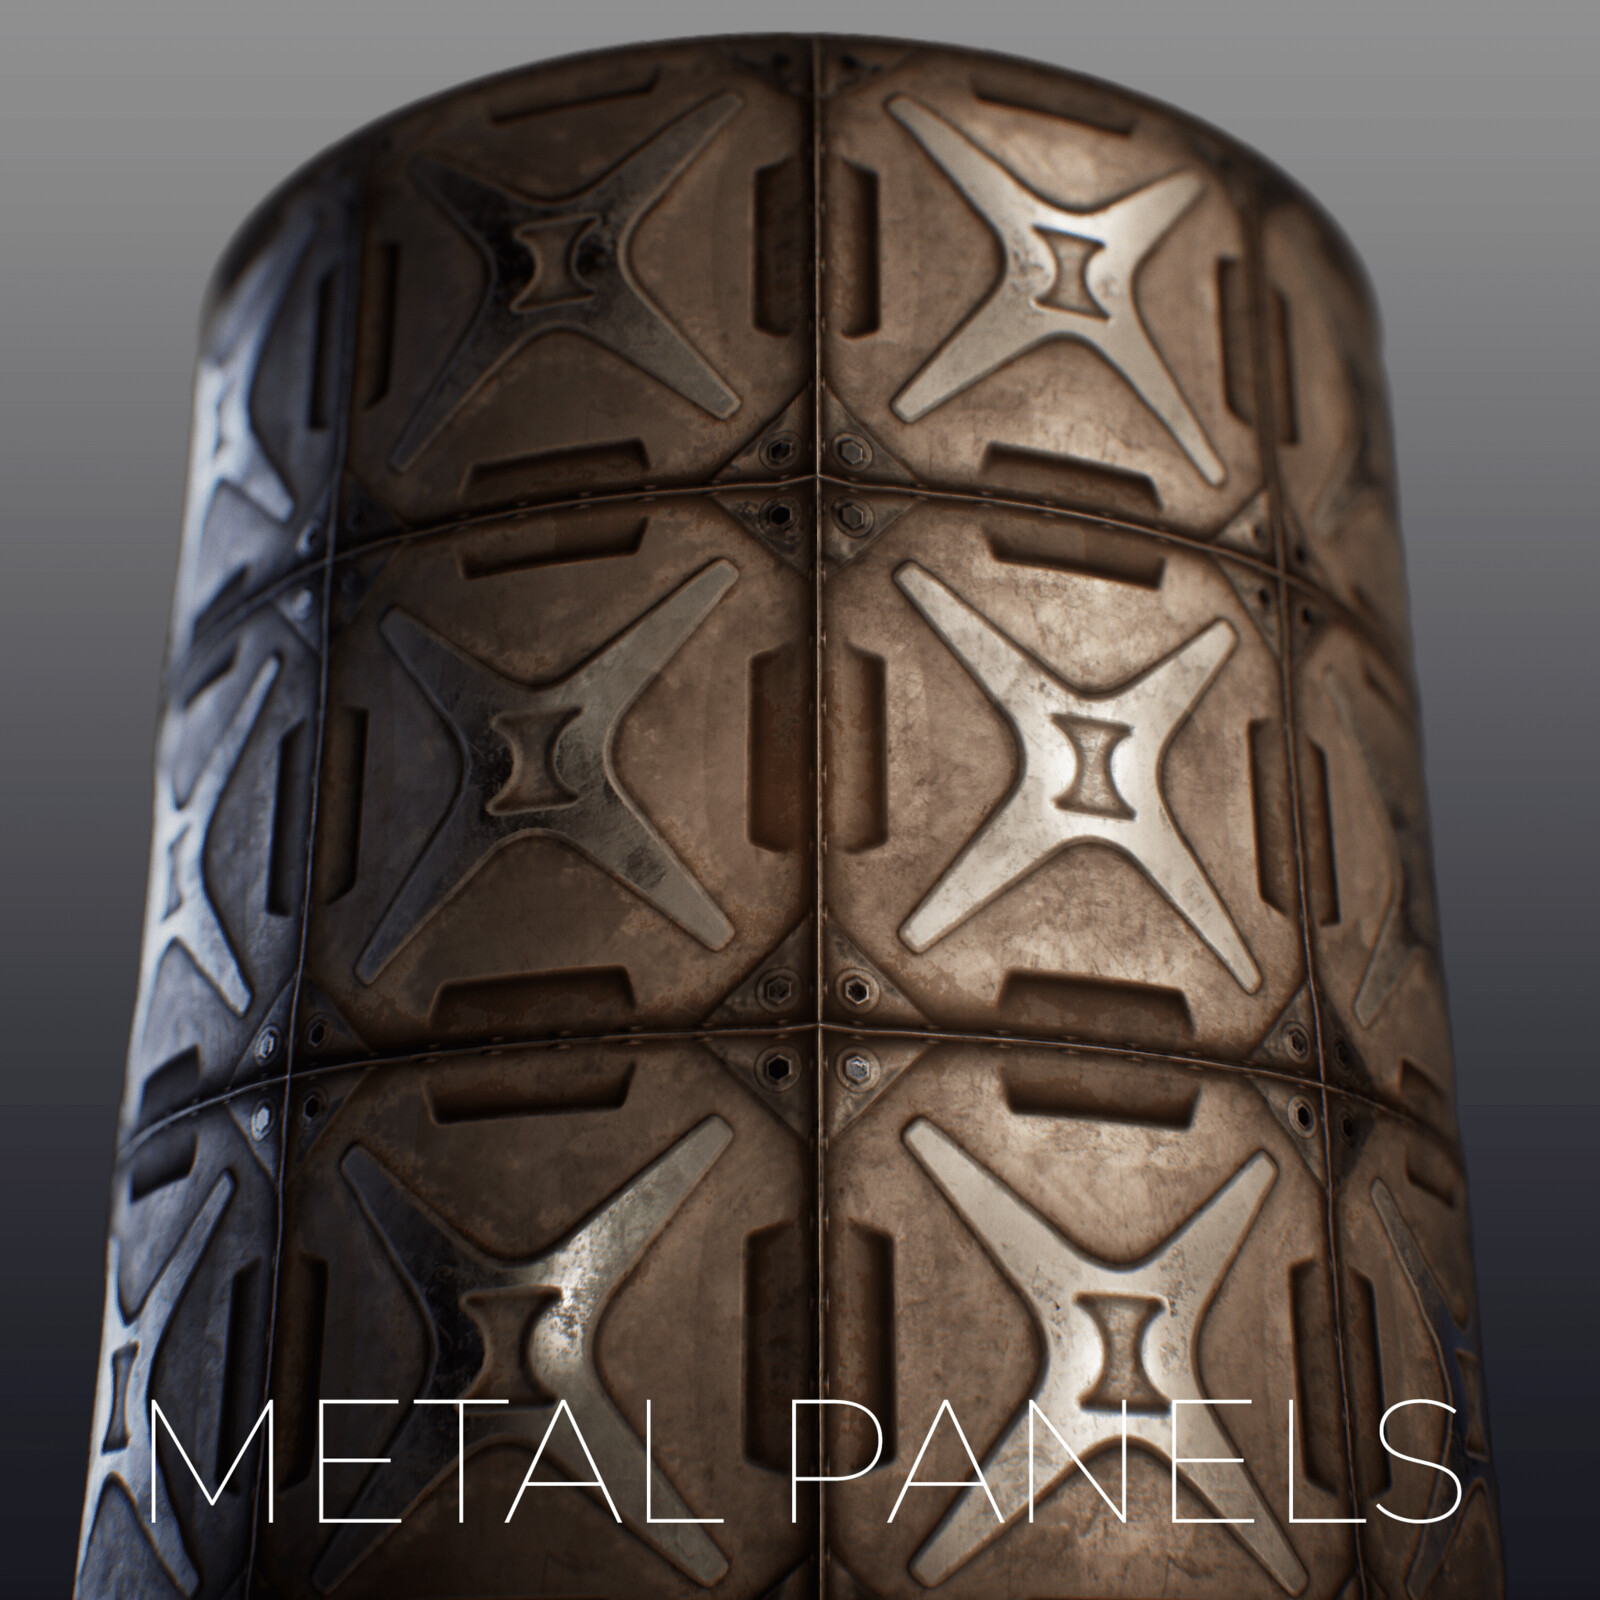 Metal Panels